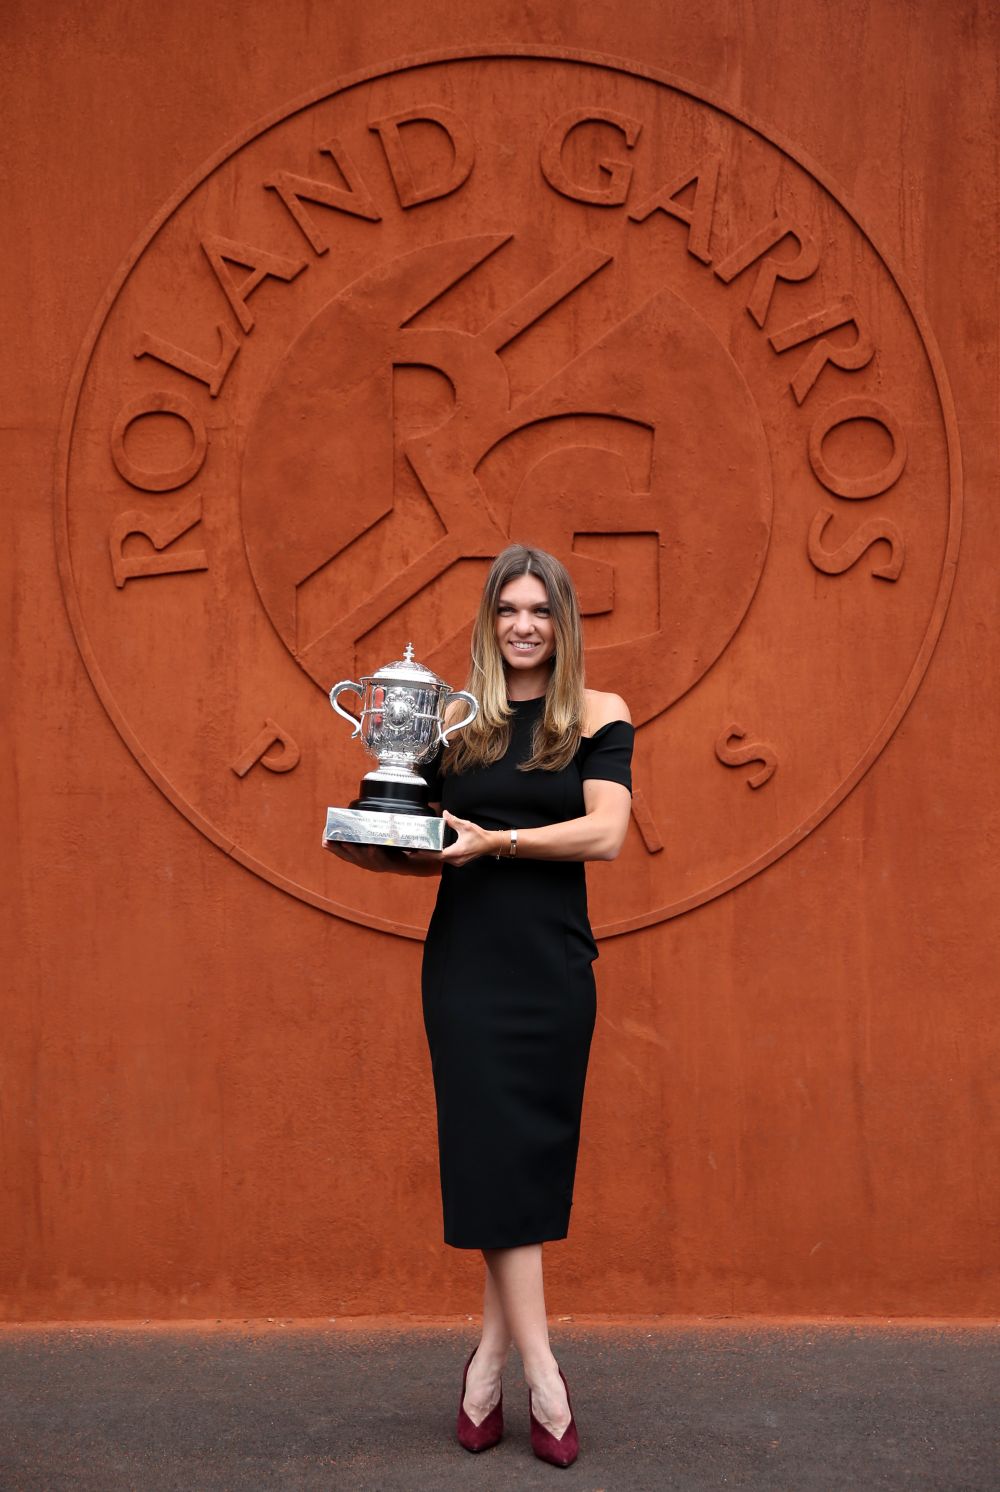 A avut loc sedinta foto a Simonei Halep cu trofeul Roland Garros! Cum s-a imbracat Simona la eveniment FOTO_13